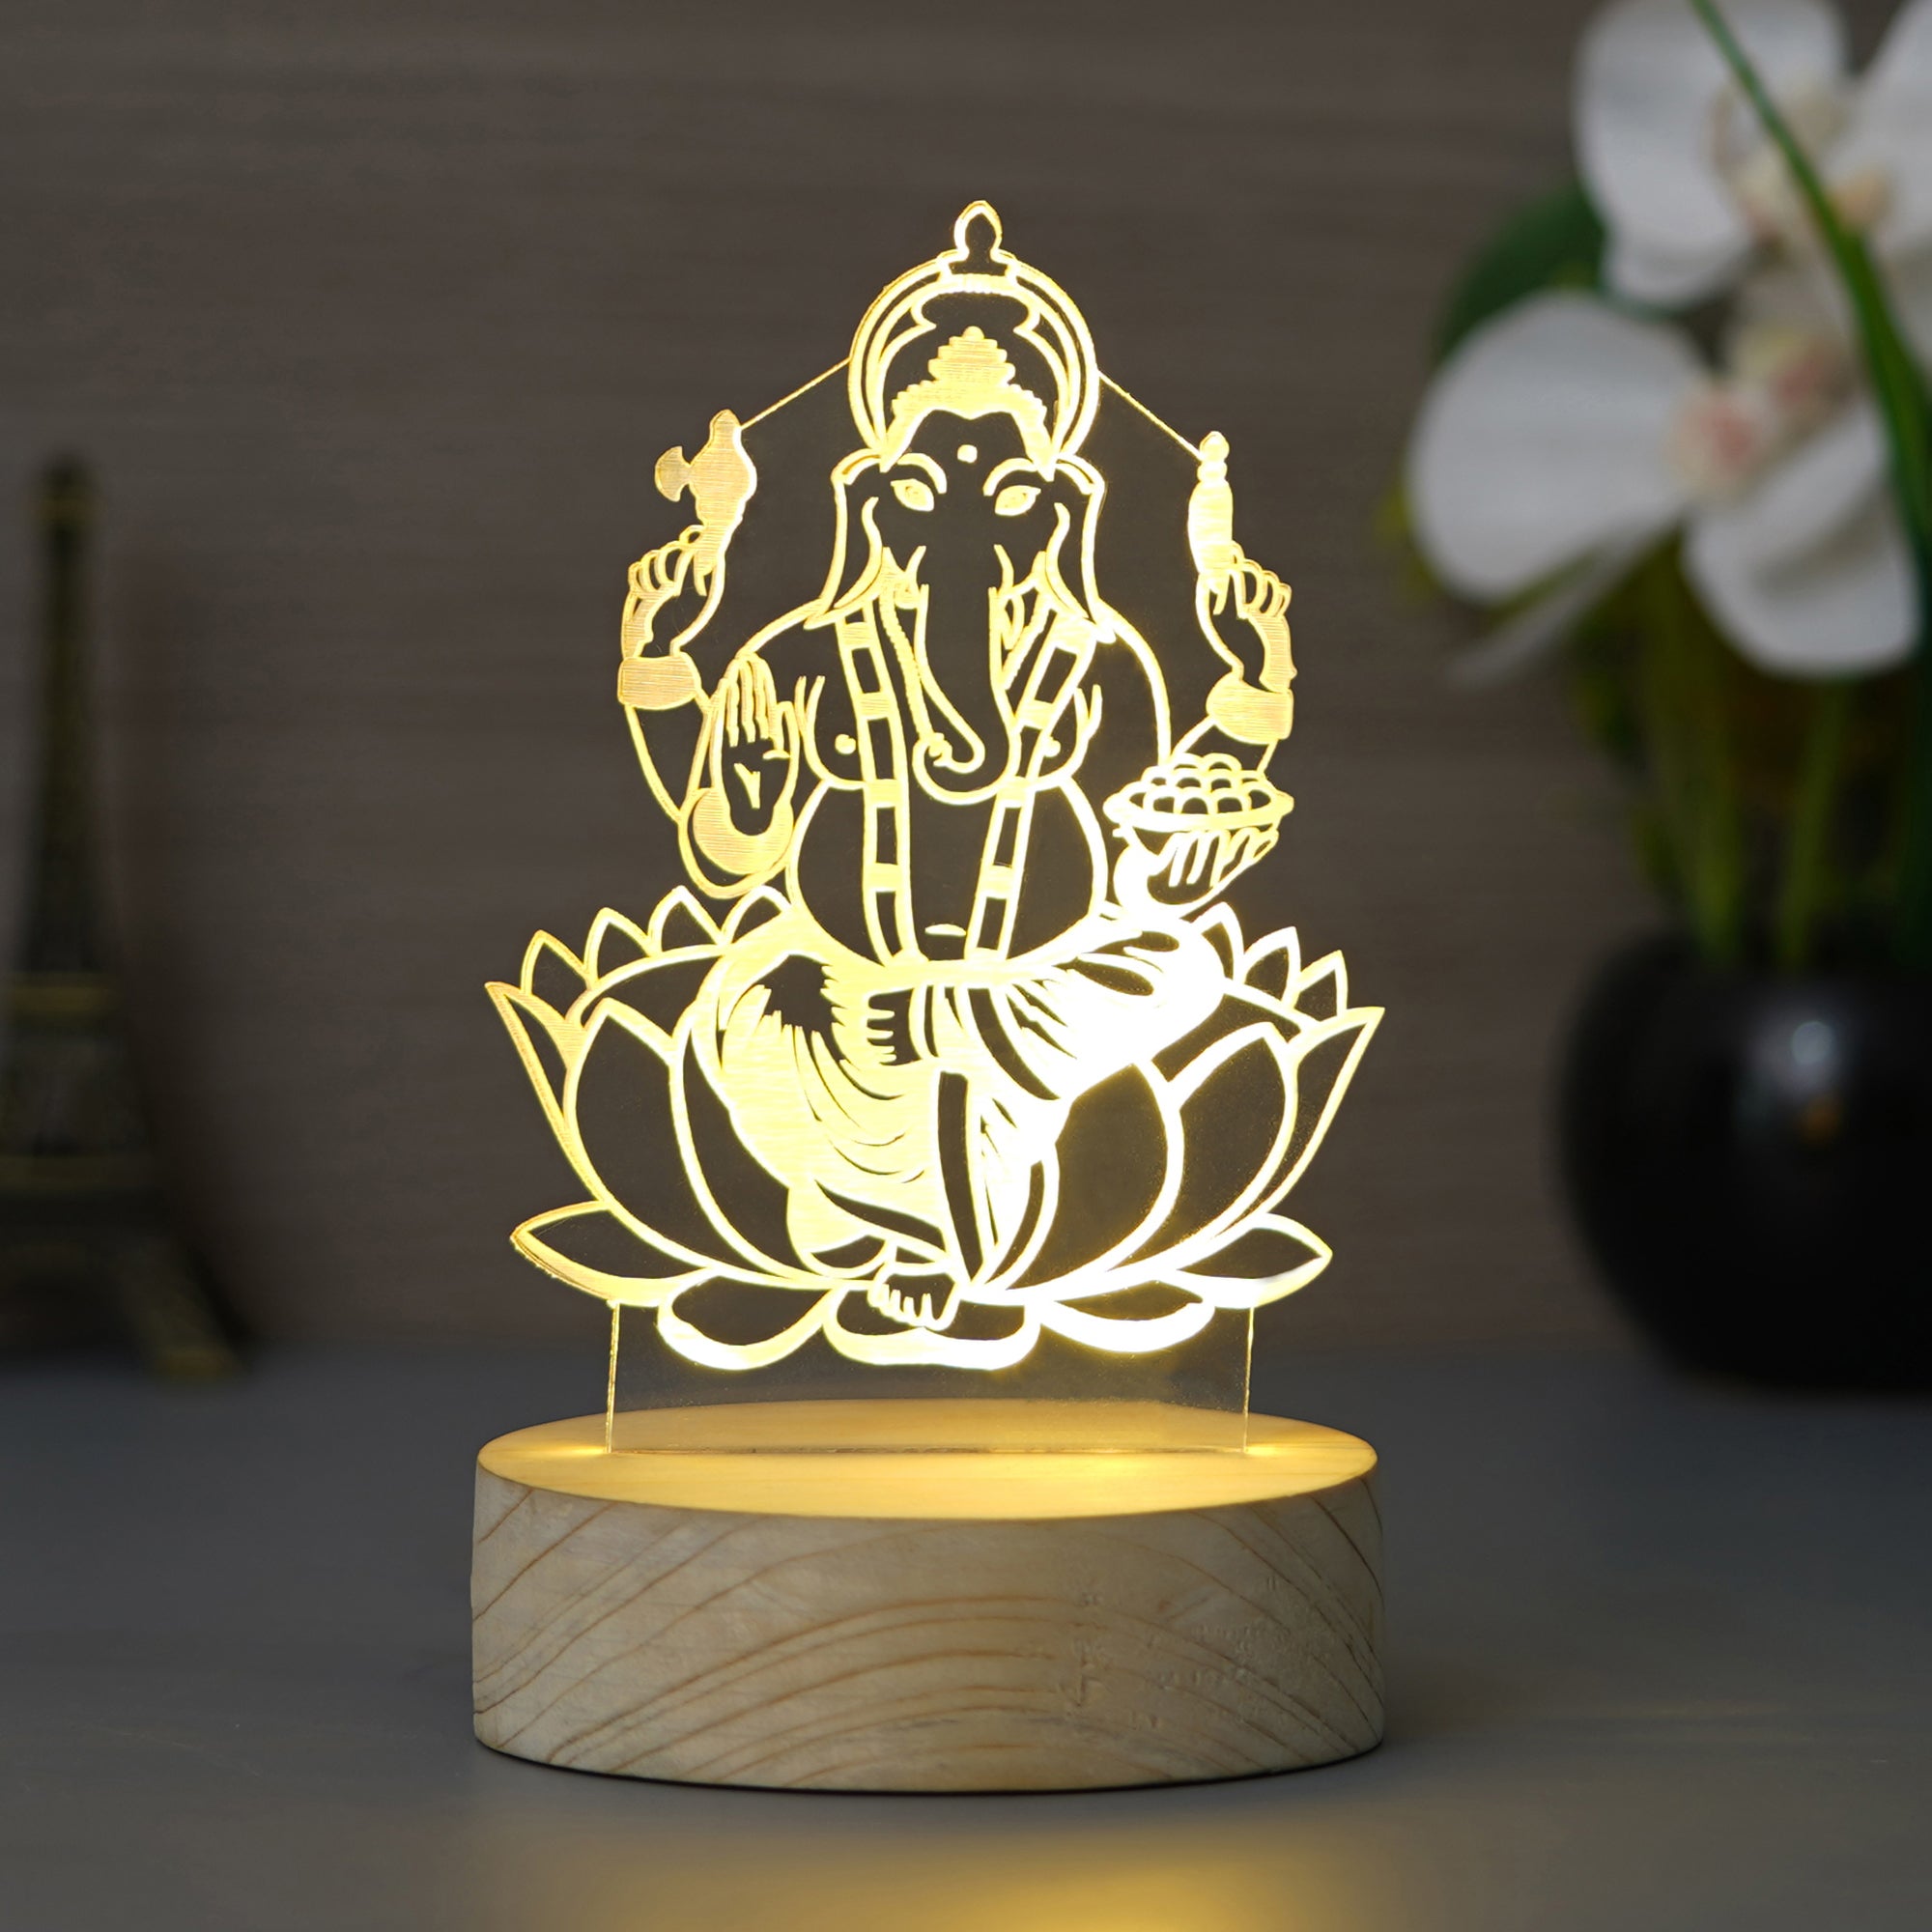 Lord Ganesha Design Carved on Acrylic & Wood Base Night Lamp